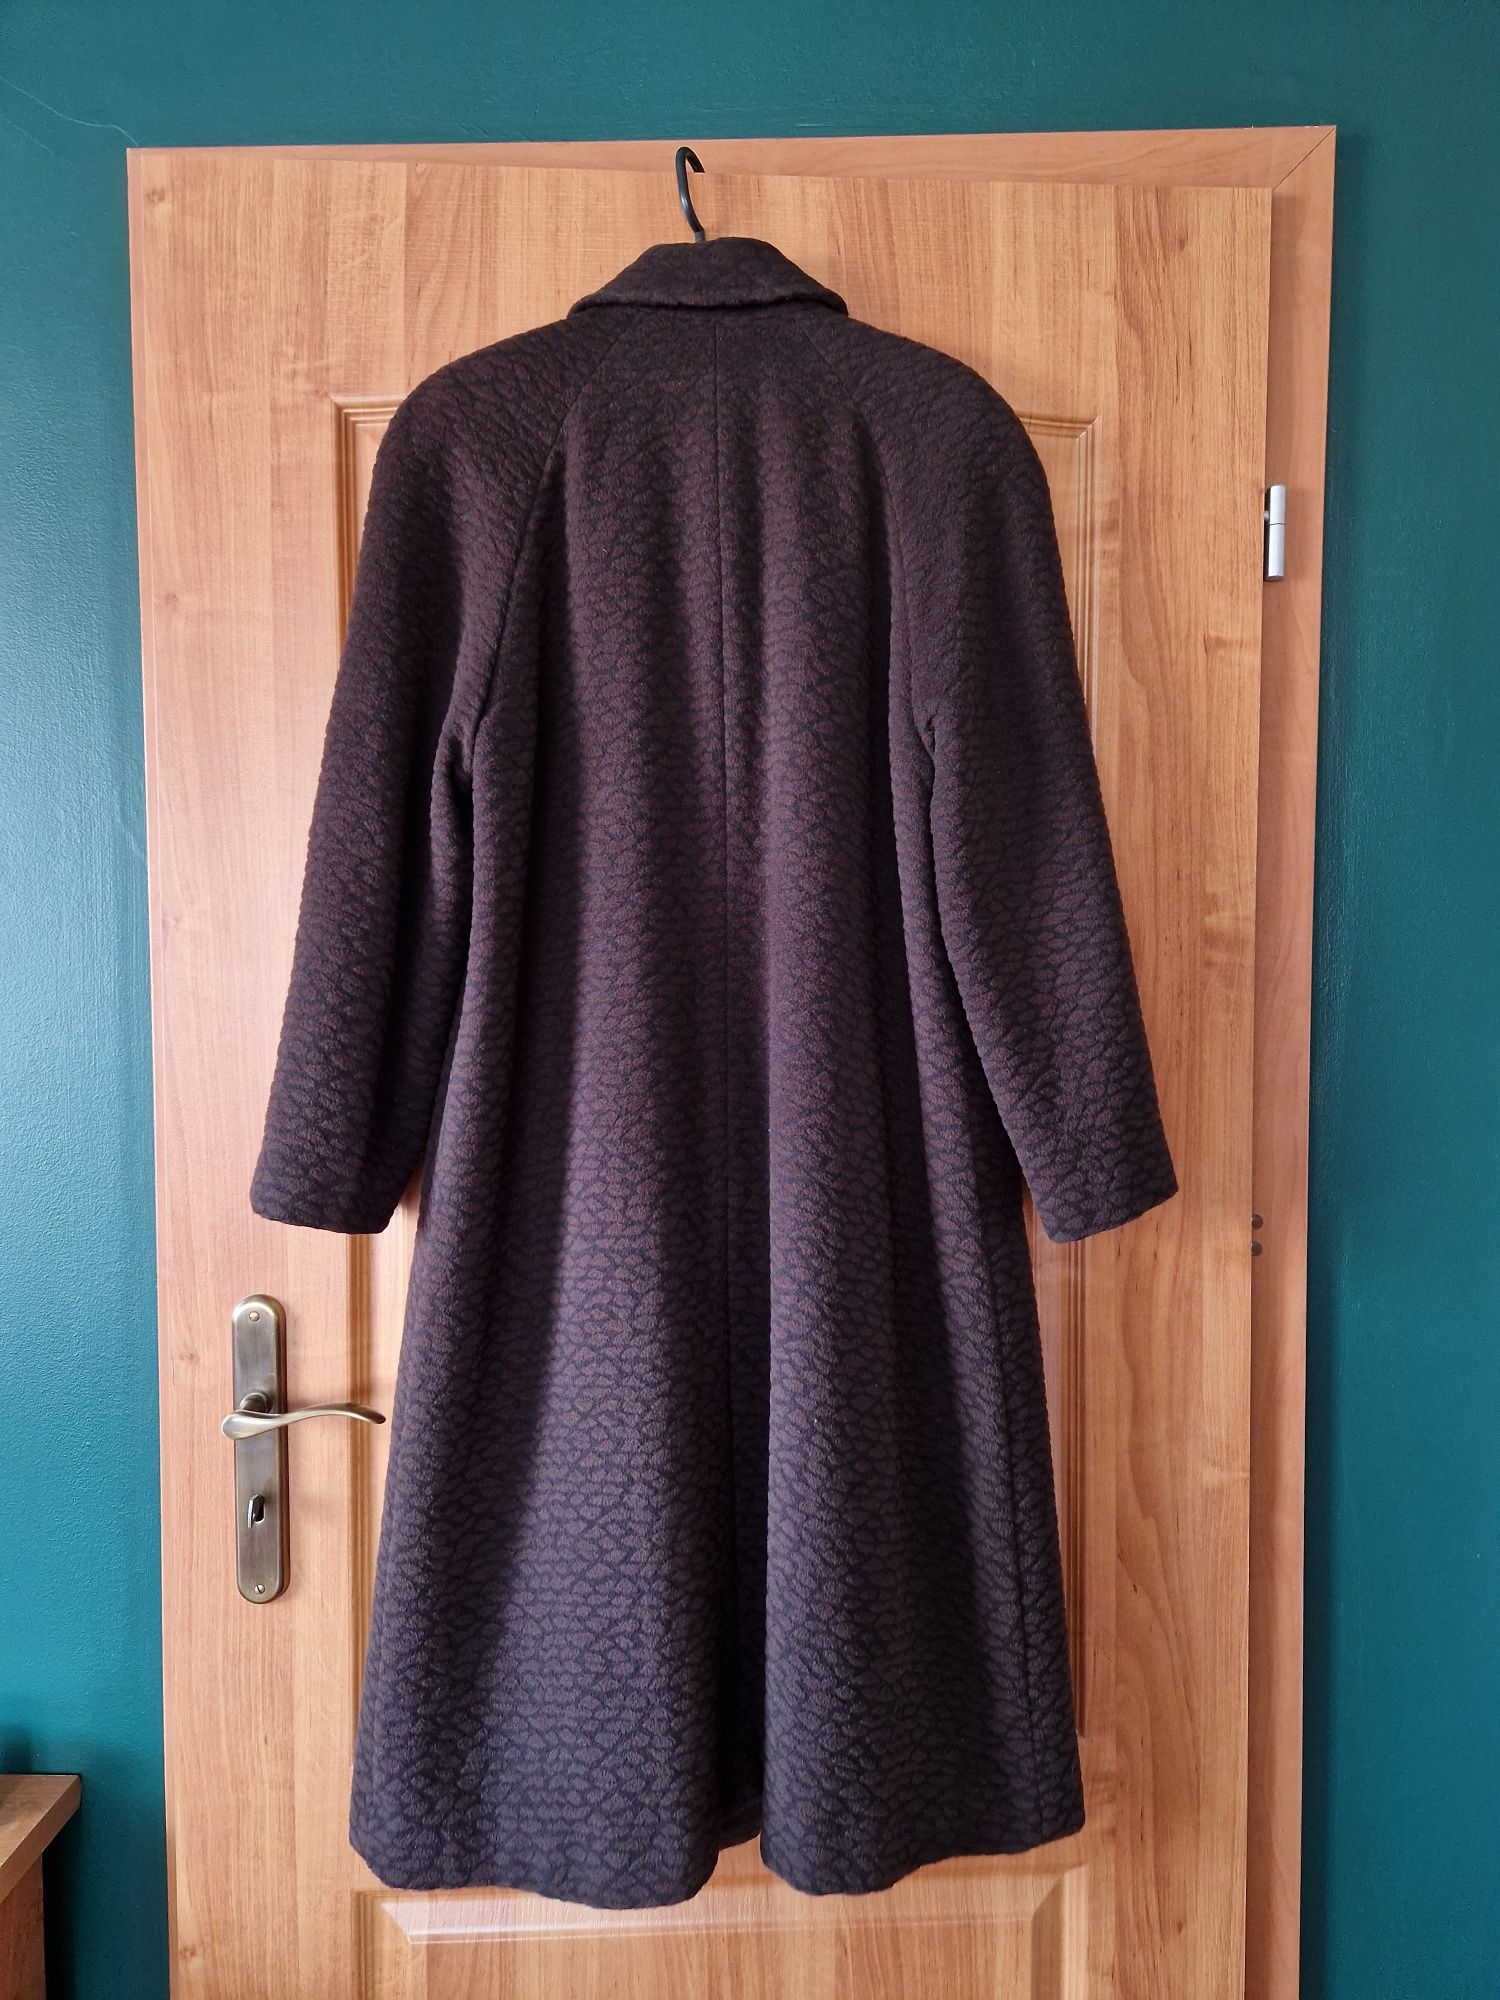 Damski płaszcz z angory i wełny, Monnari, rozmiar 40